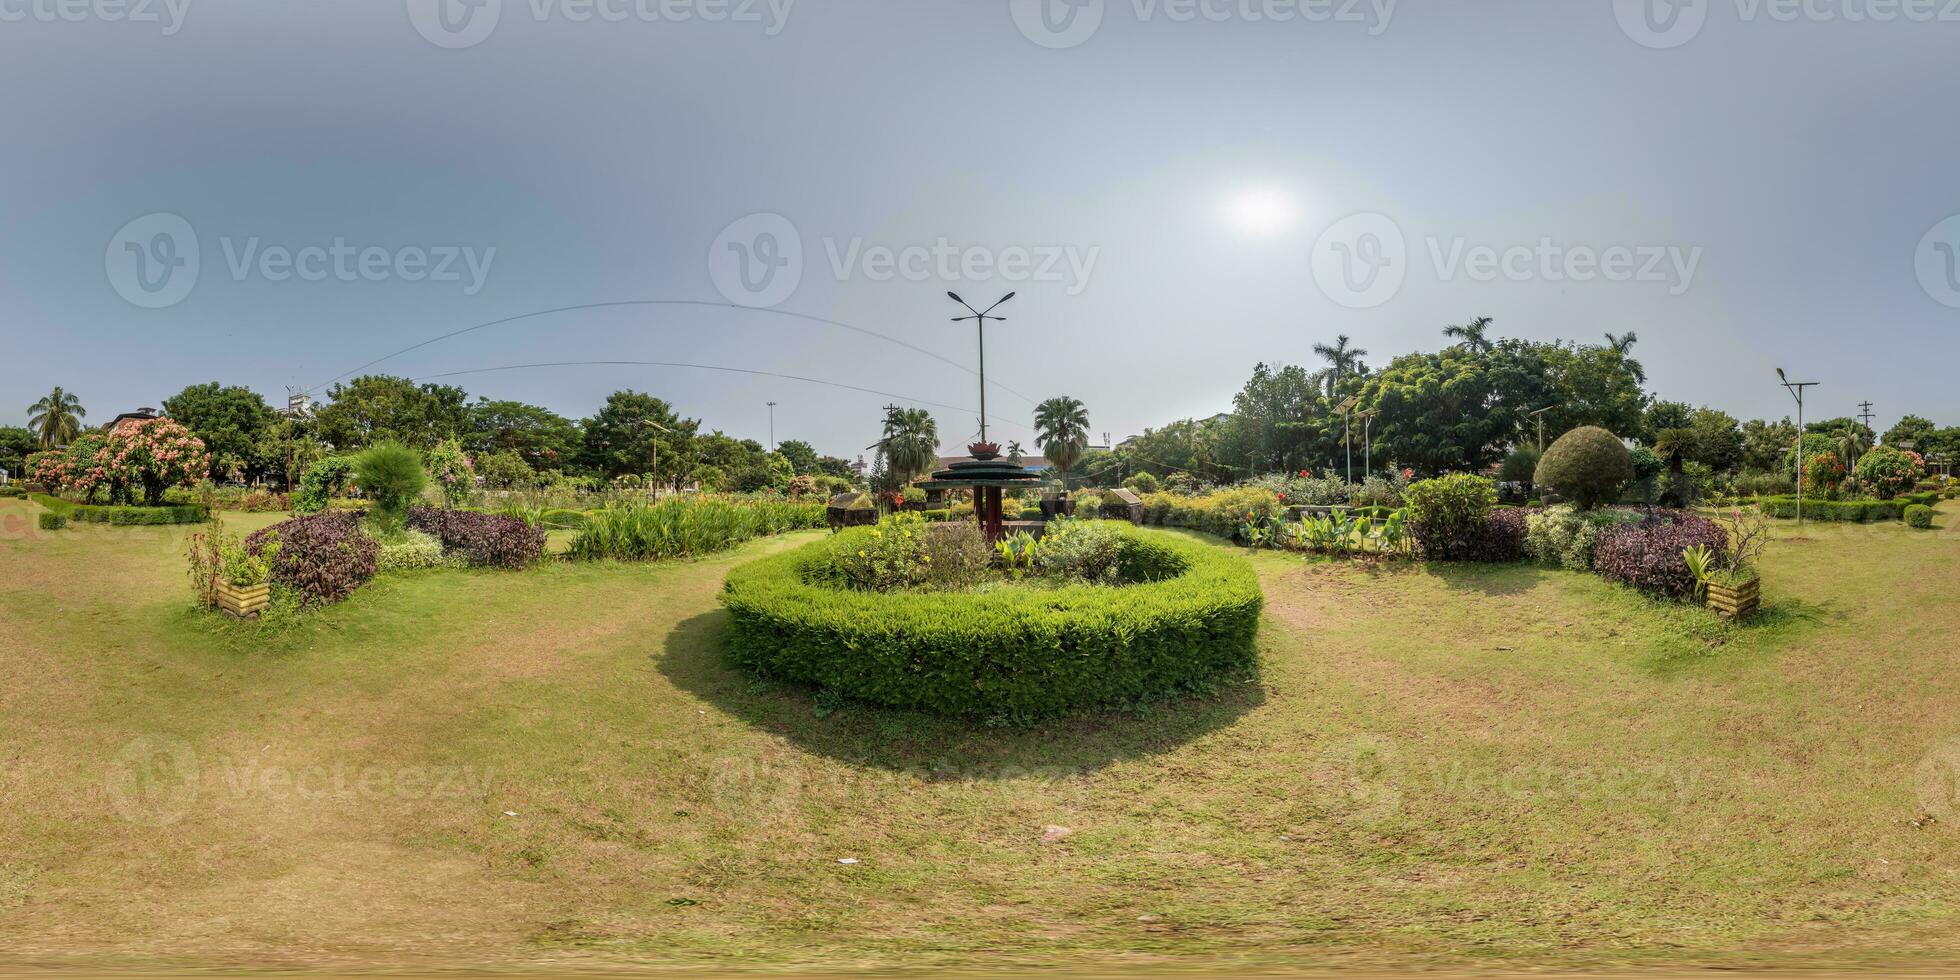 lleno esférico 360 hdri sin costura panorama en equirrectangular proyección, panorama en parque verde zona en indio ciudad, vr contenido foto